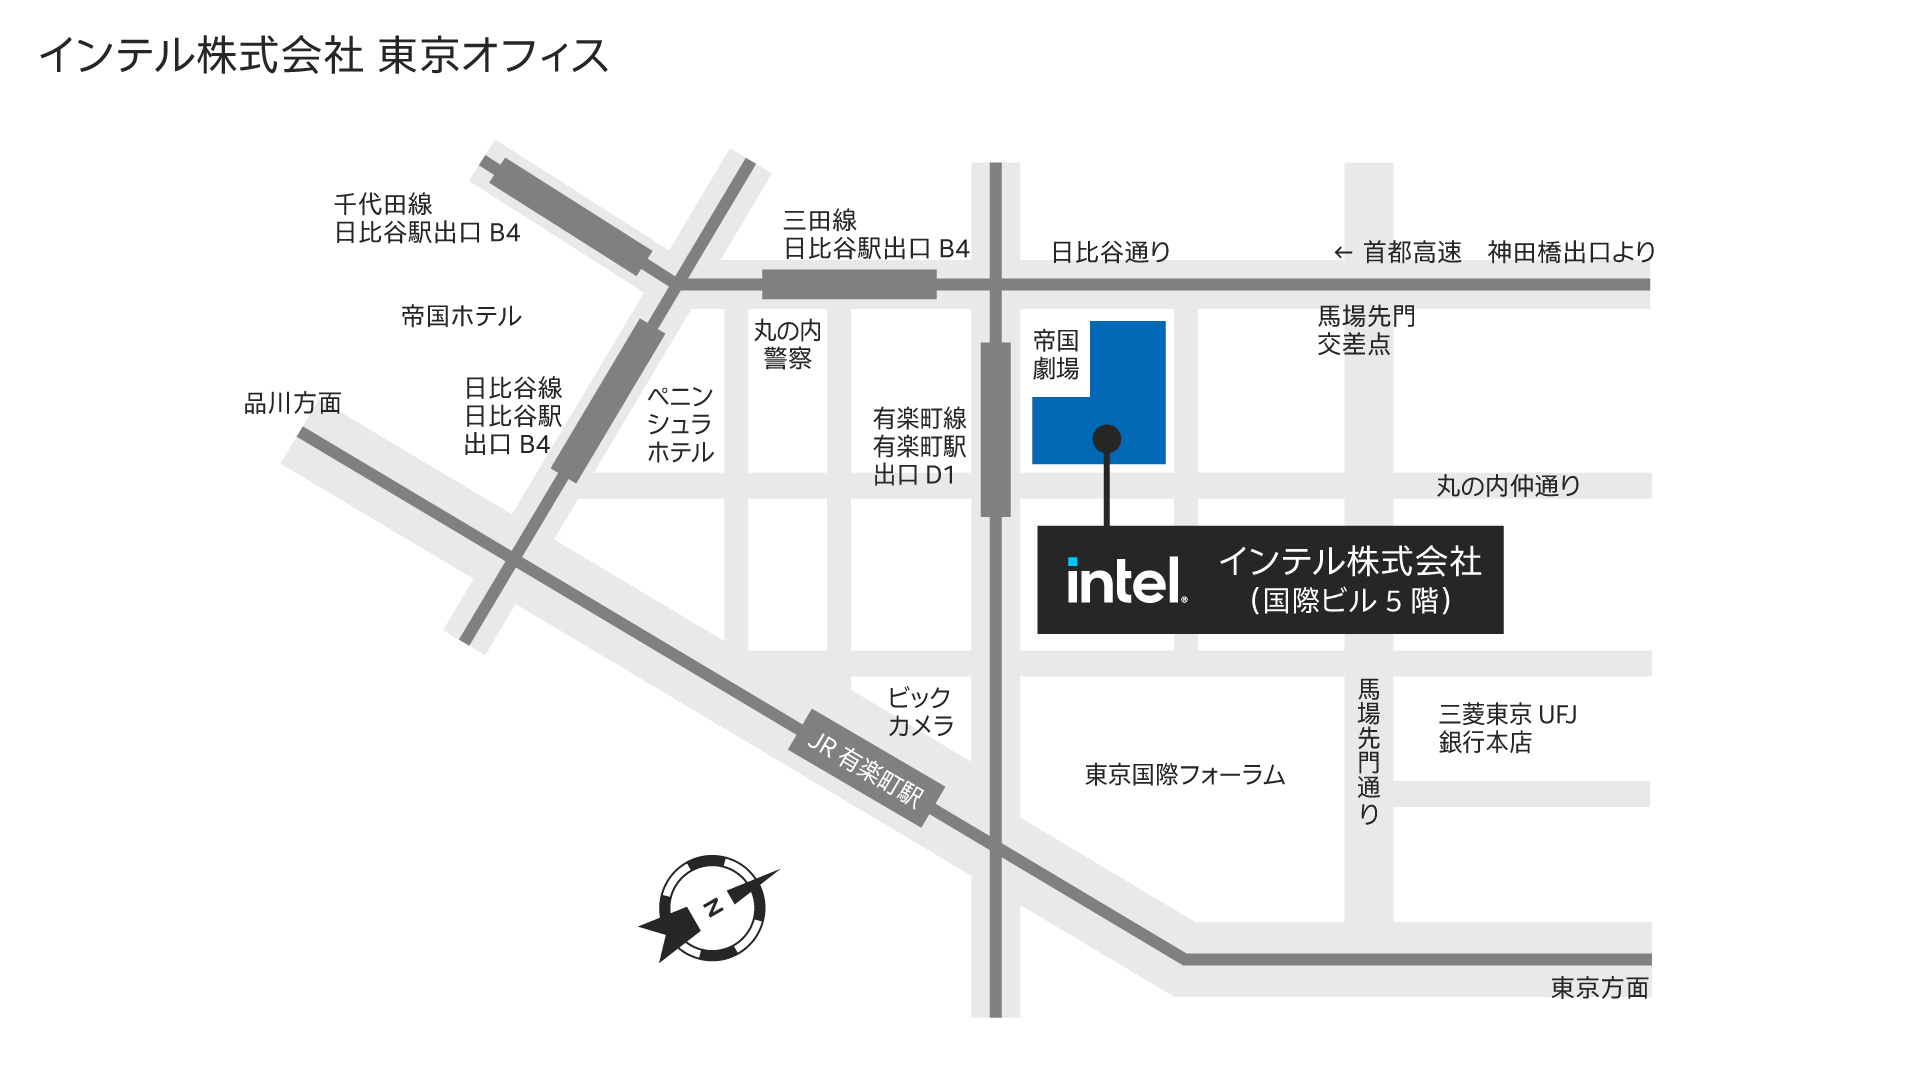 インテル株式会社 東京オフィス